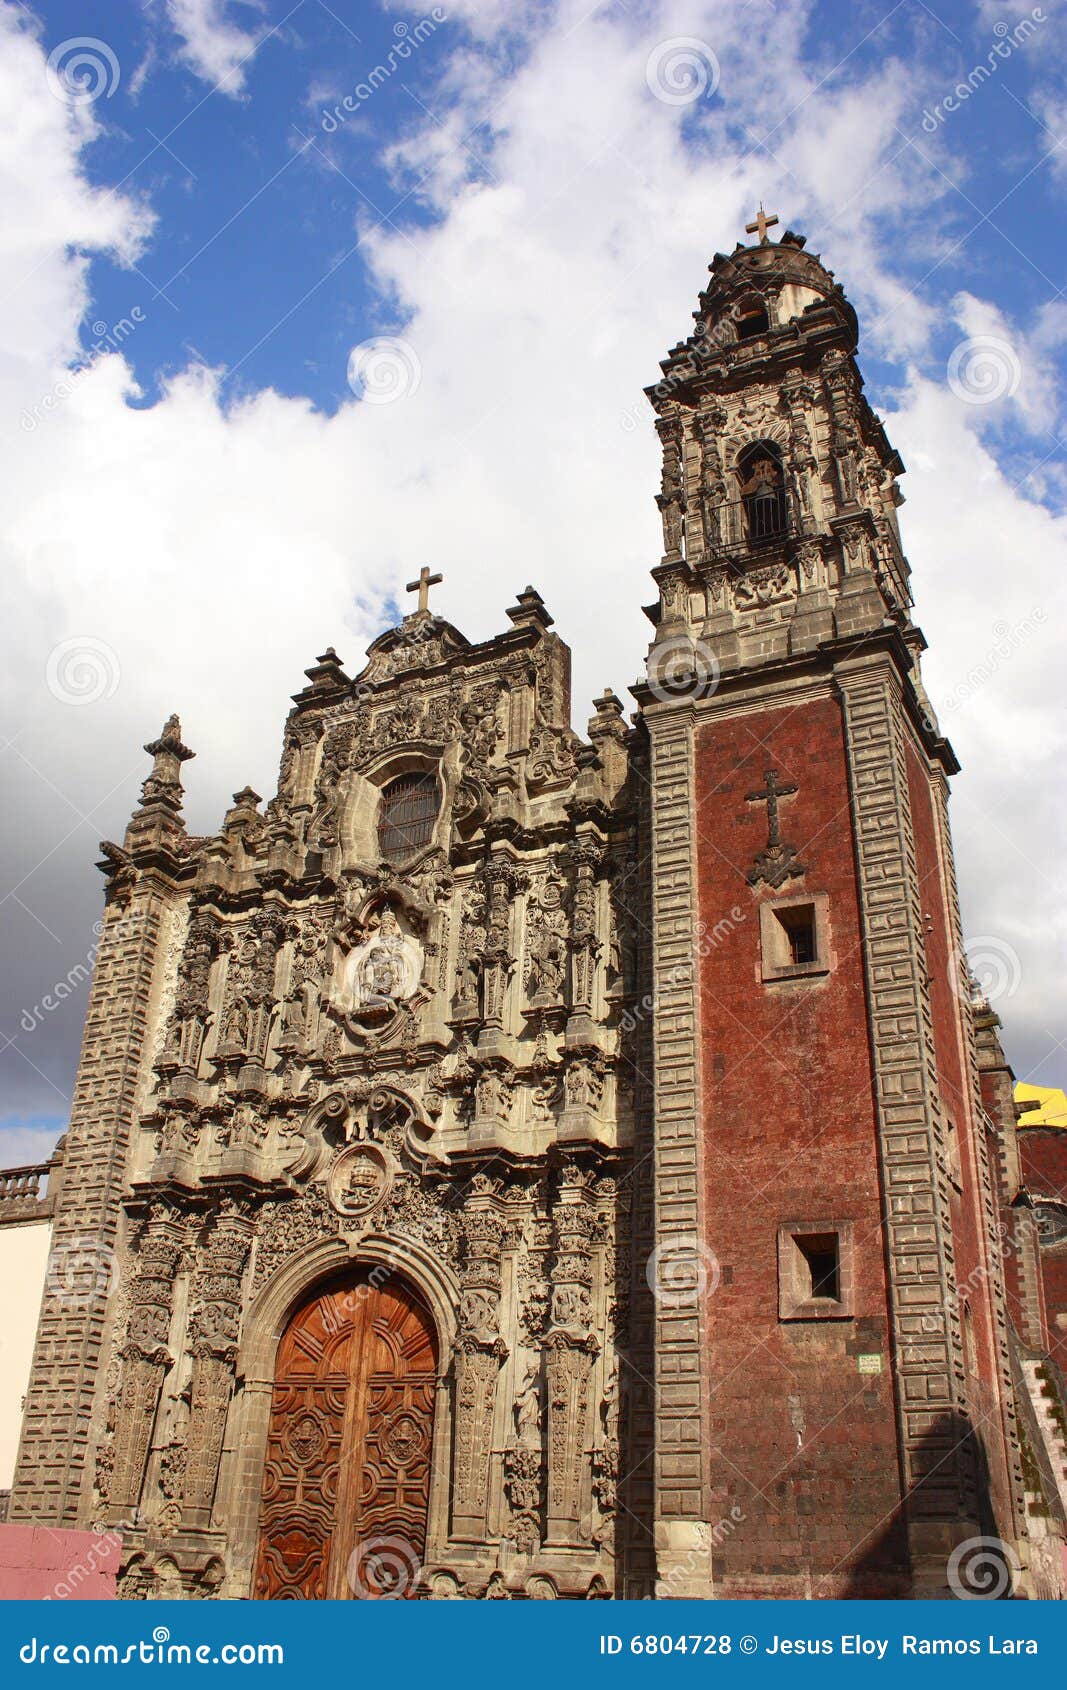 santisima trinidad church in mexico city i